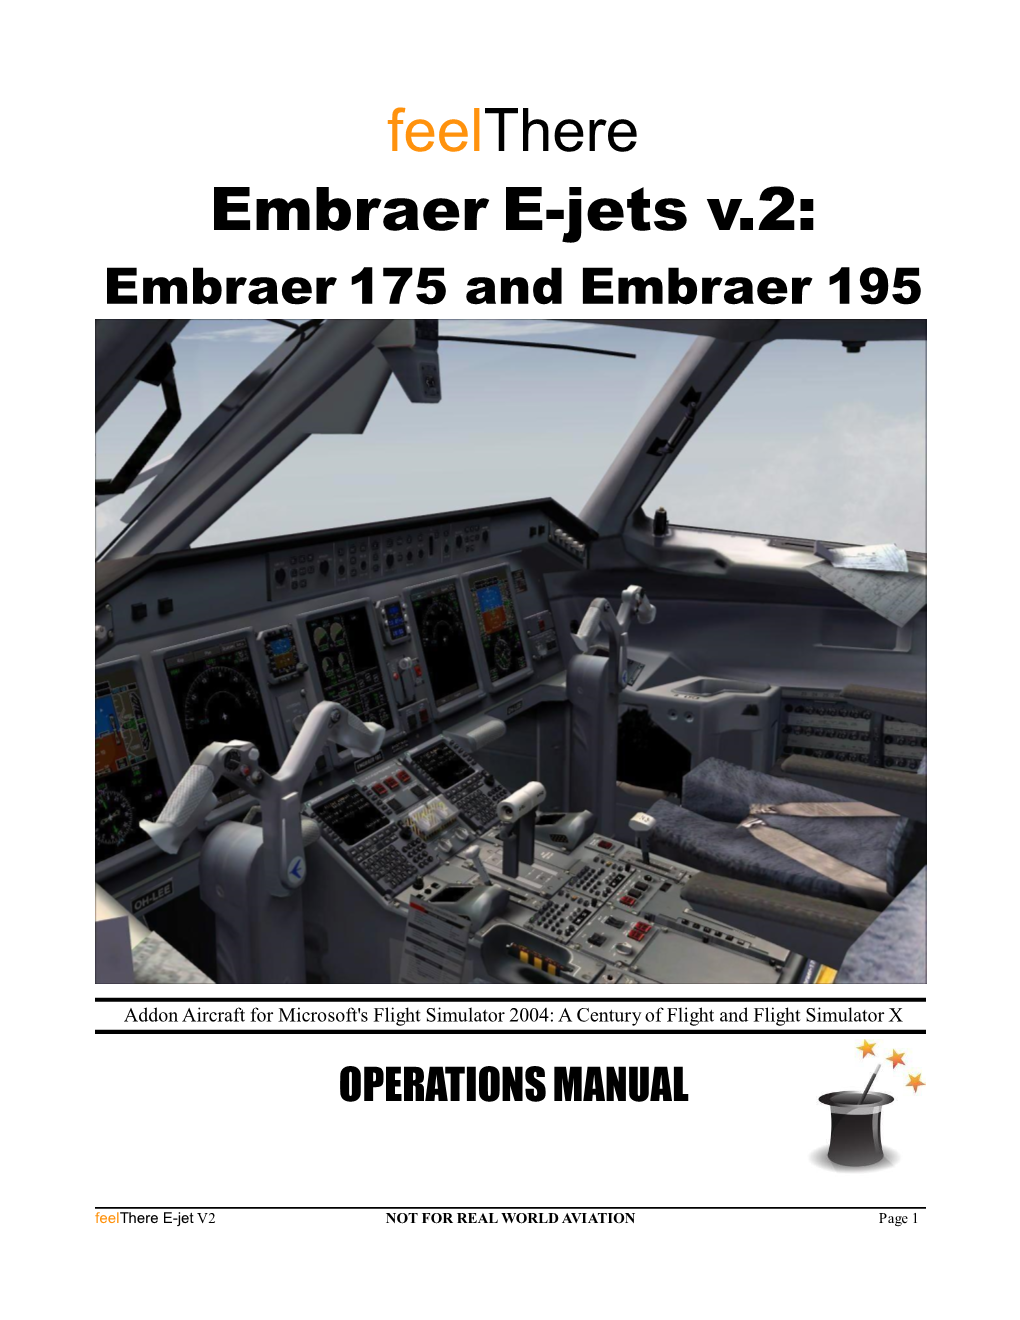 Manual for the E-Jets V2: Embraer 175 & Embraer